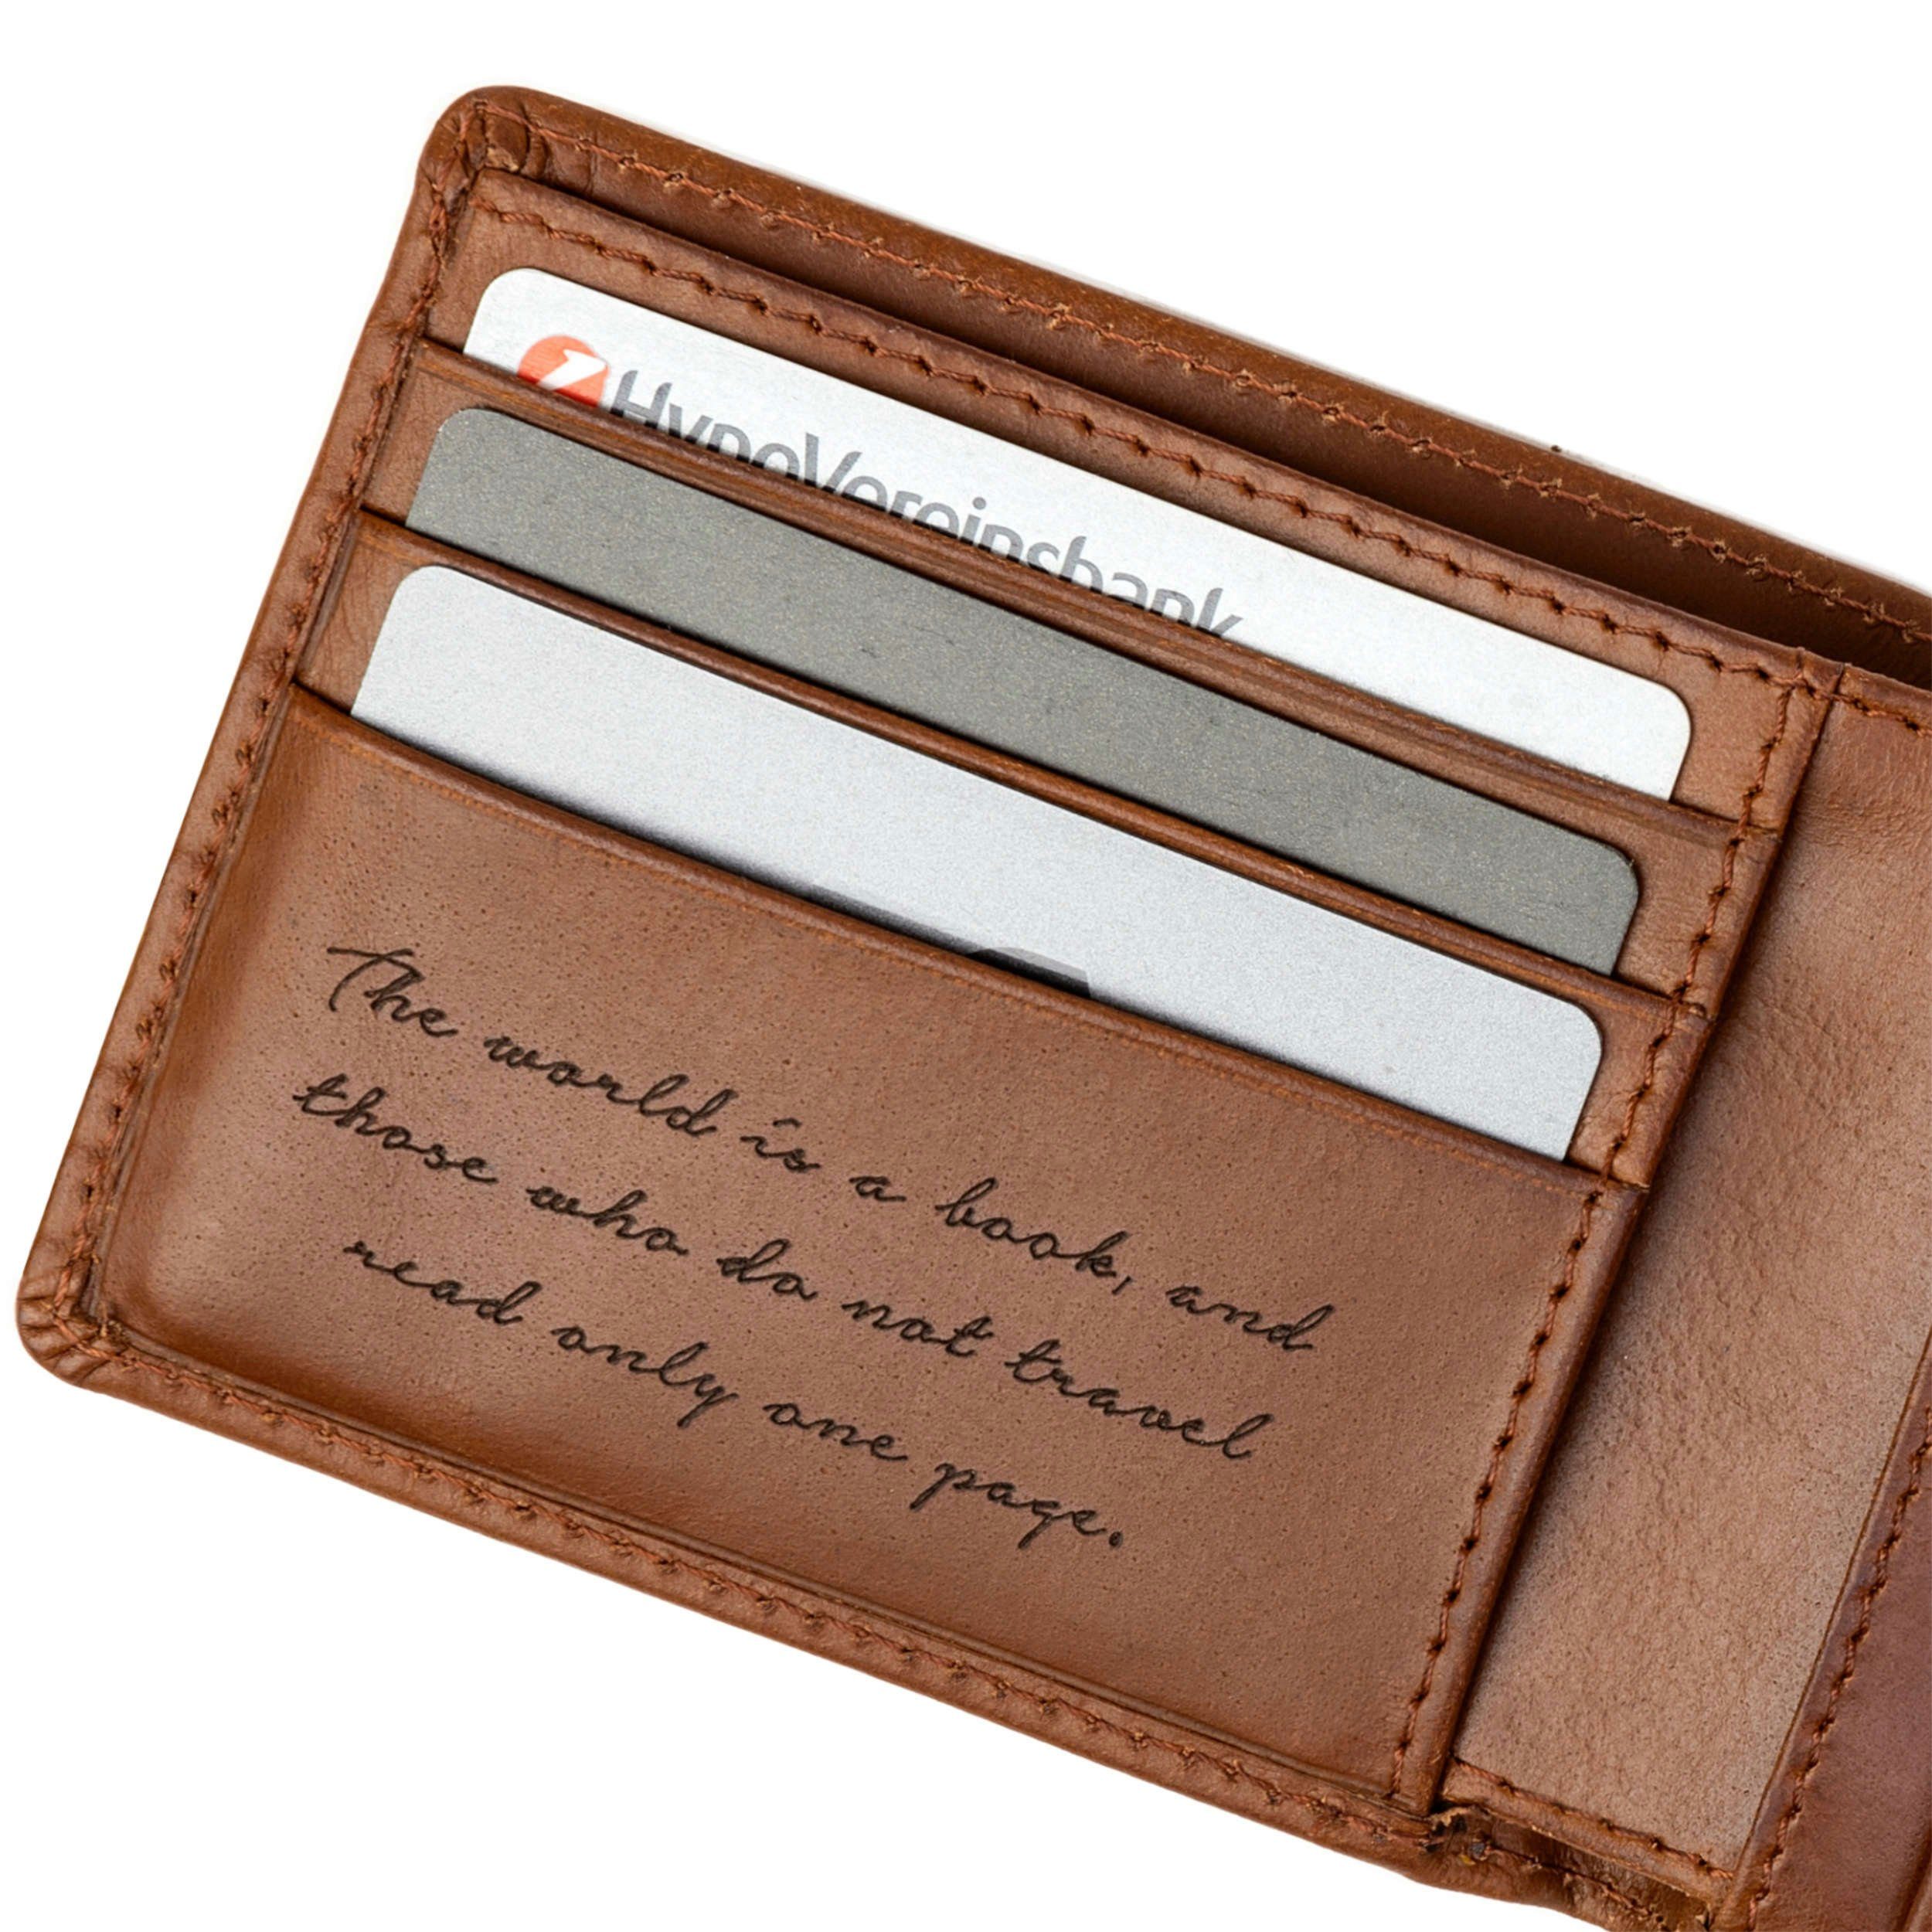 DRAKENSBERG Geldbörse Herren mit Leder Schutz Geldbeutel RFID und graviertem Reisezitat für »Joe« Brieftasche Vintage-Braun